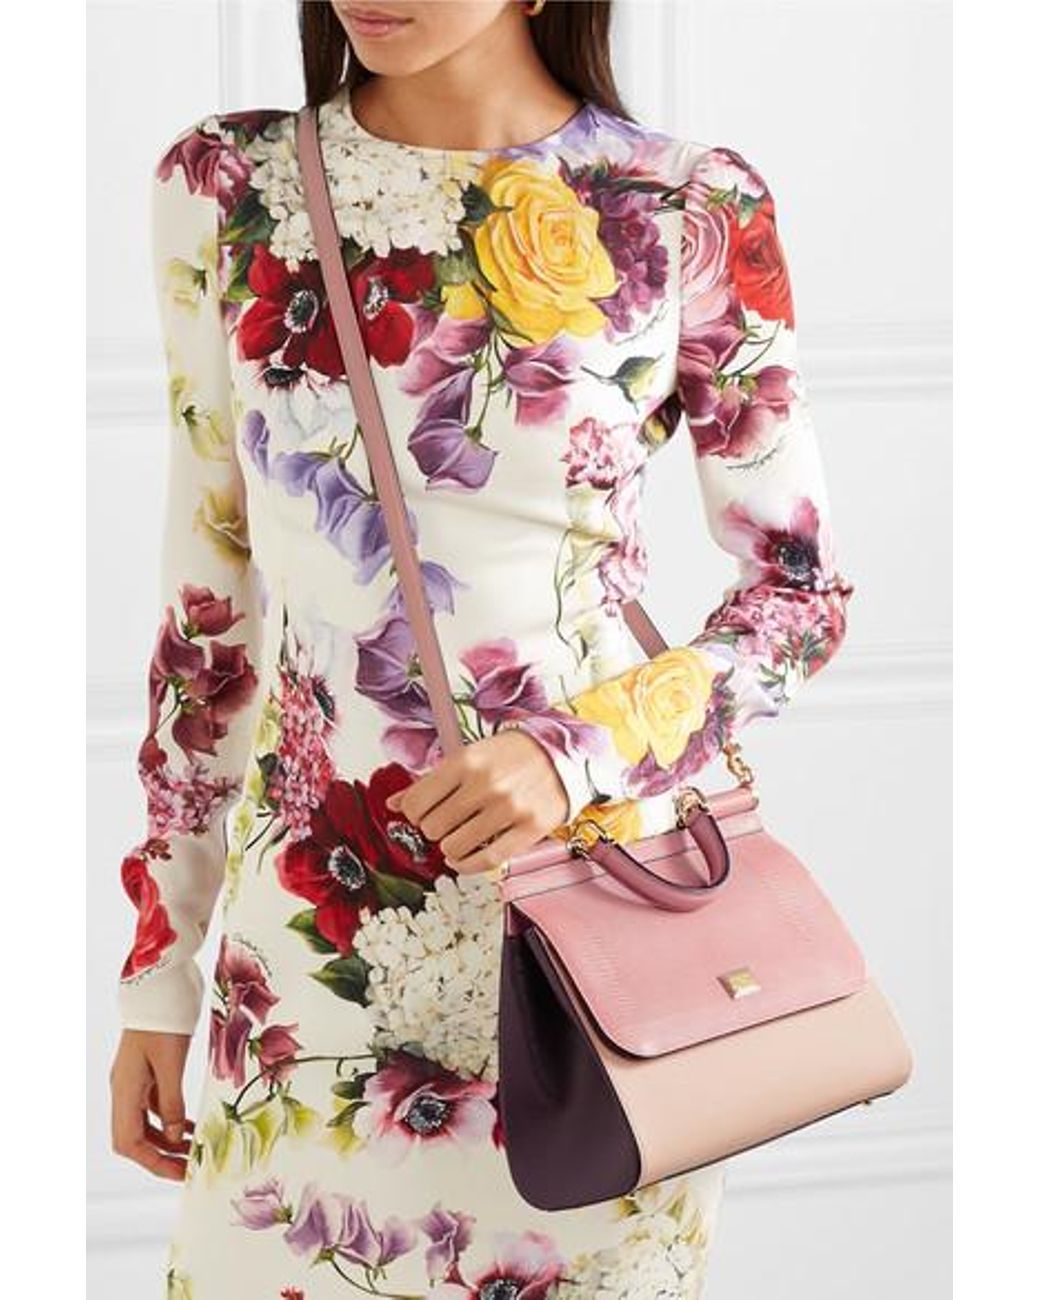 Shoulder bags Dolce & Gabbana - Miss Sicily small shoulder bag -  BI0671A10018H412